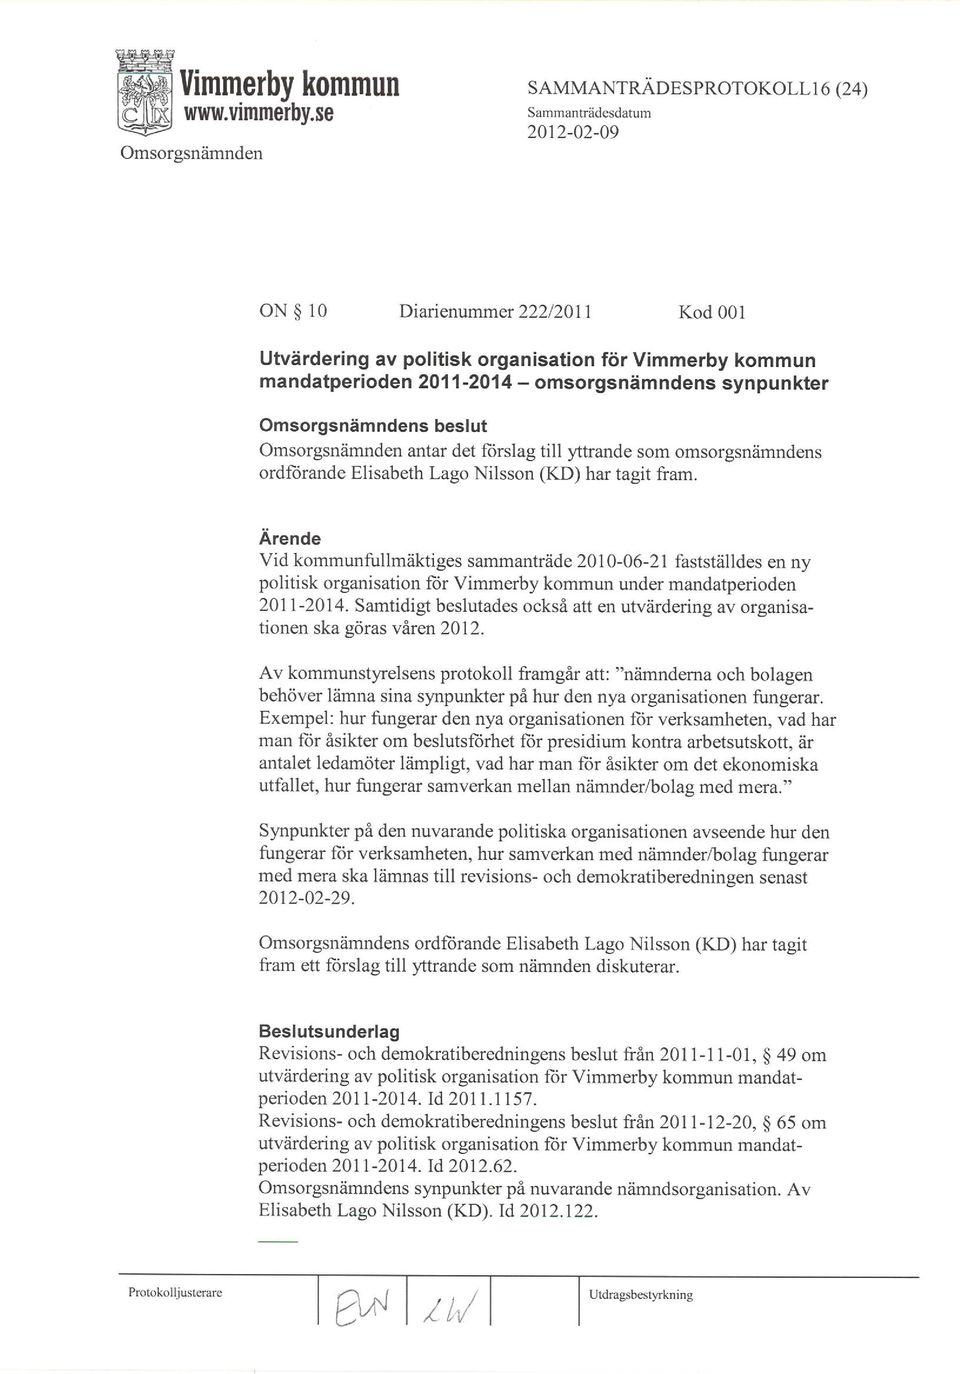 Arende Vid kommunfullmäktiges sammanträde 2010-06-21 fastställdes en ny politisk organisation für Vimmerby kommun under mandaþerioden 2071-2014.